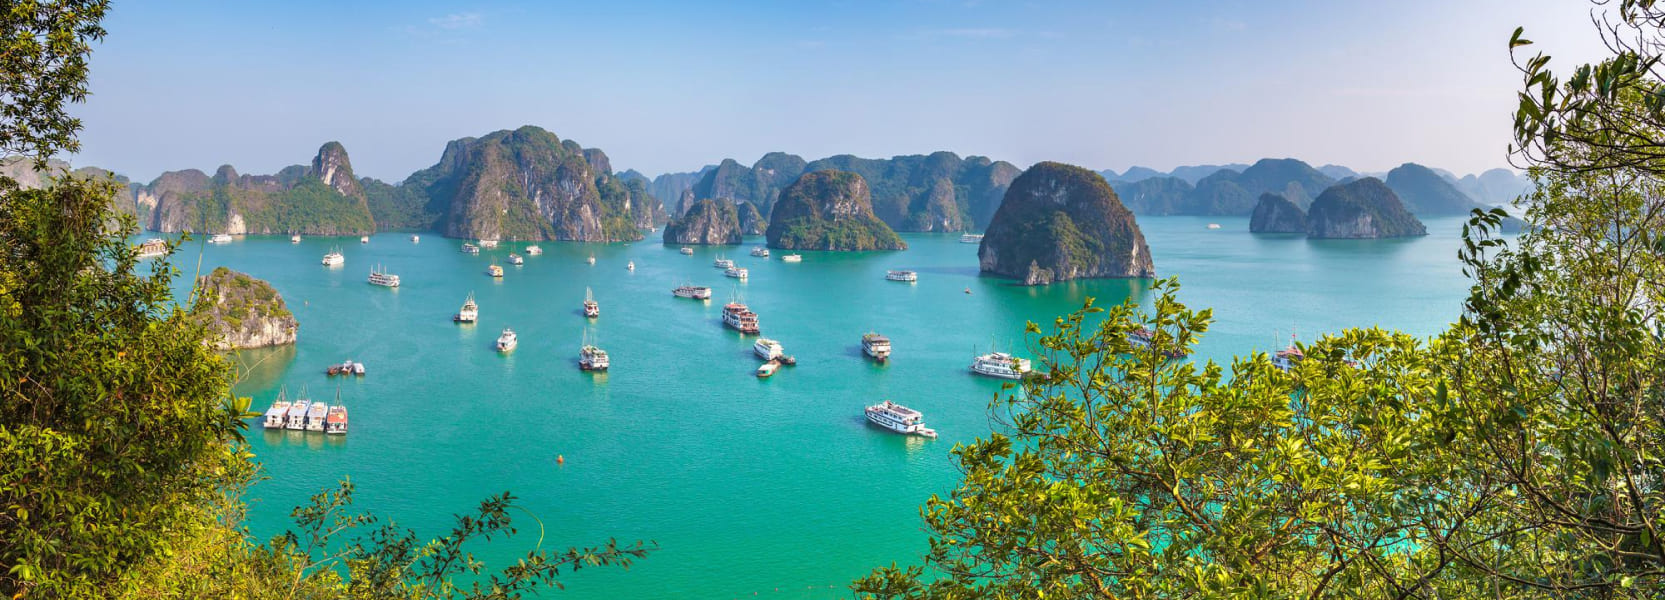 Vietnam tourist visa online